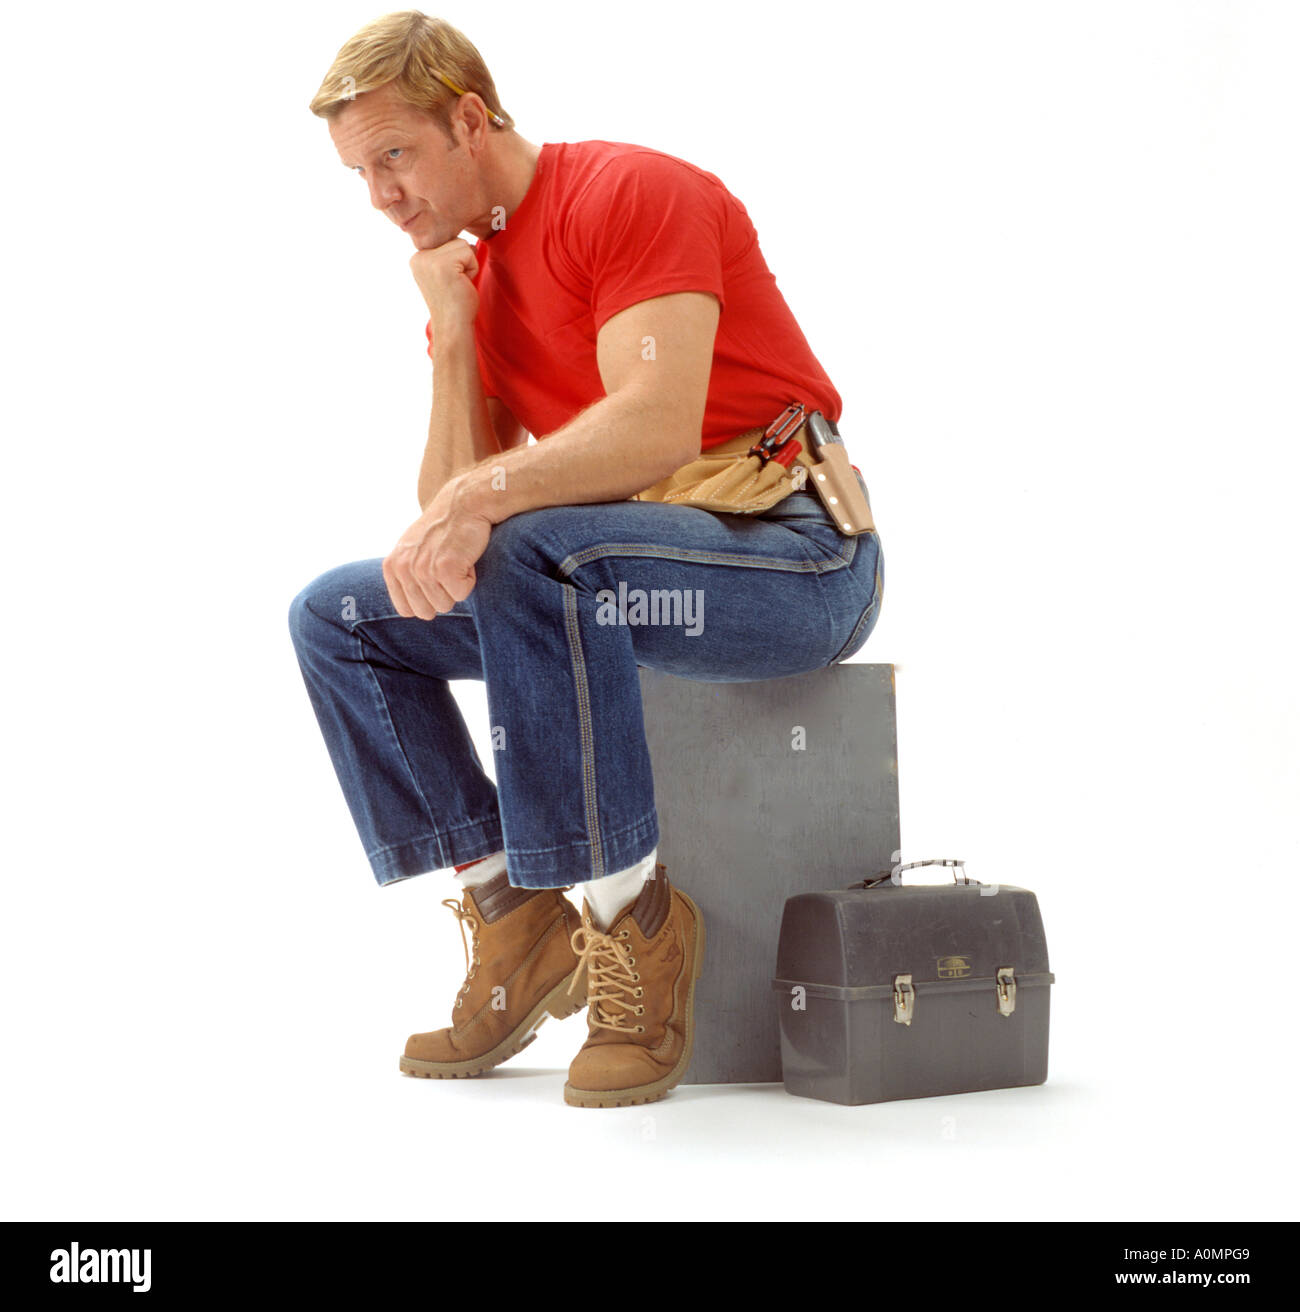 1 ein Mann männlichen kaukasischen rotes Hemd Werkzeug Gürtel Mittagessen Eimer Bau Arbeiter textfreiraum Job weißen Hintergrund betrachtet Stockfoto